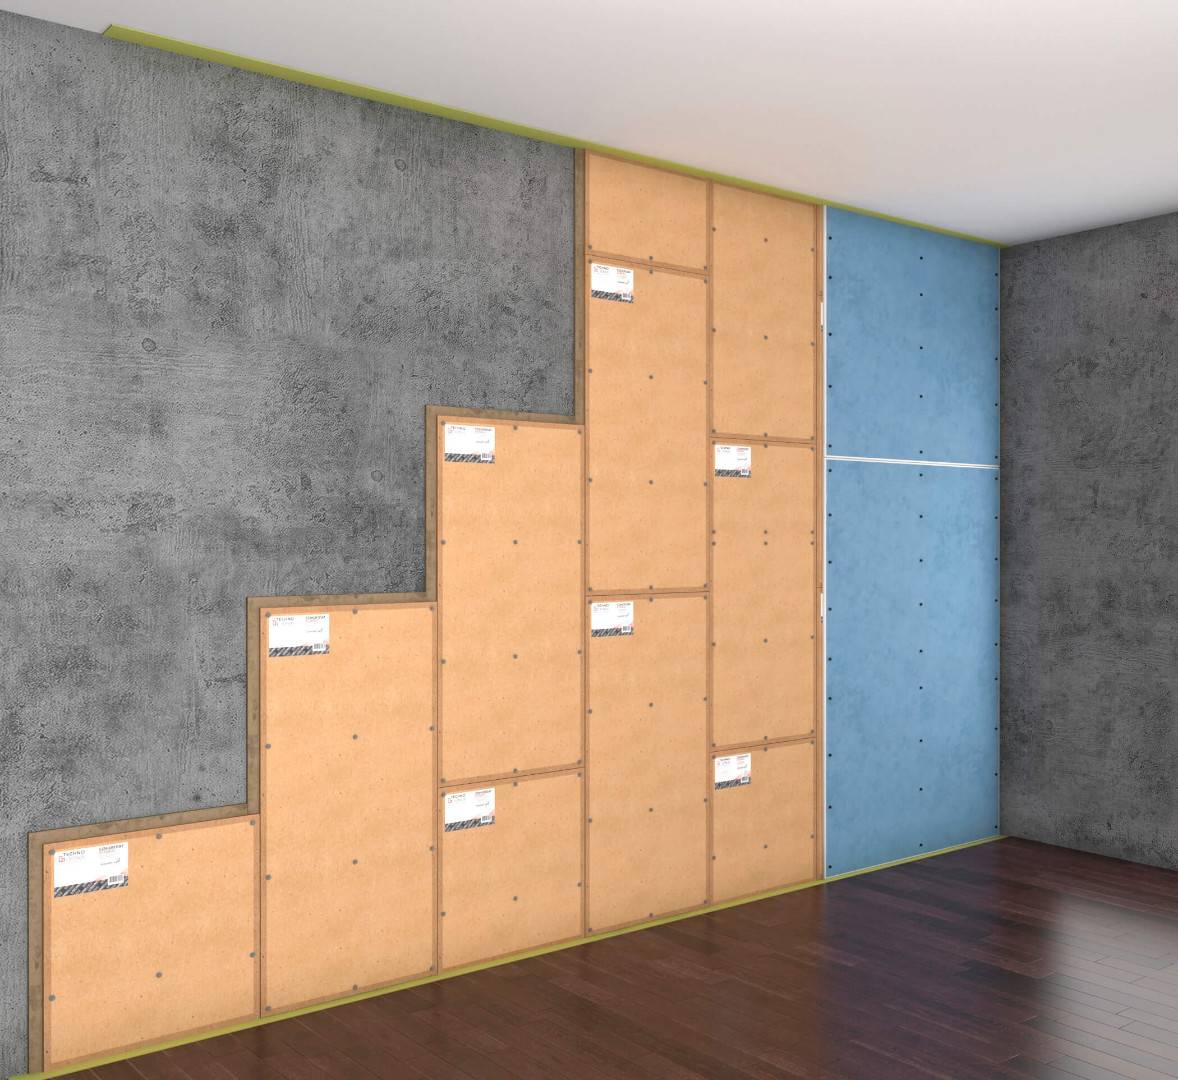 Шумоизоляция стен в квартире своими руками дешево: обзор решений